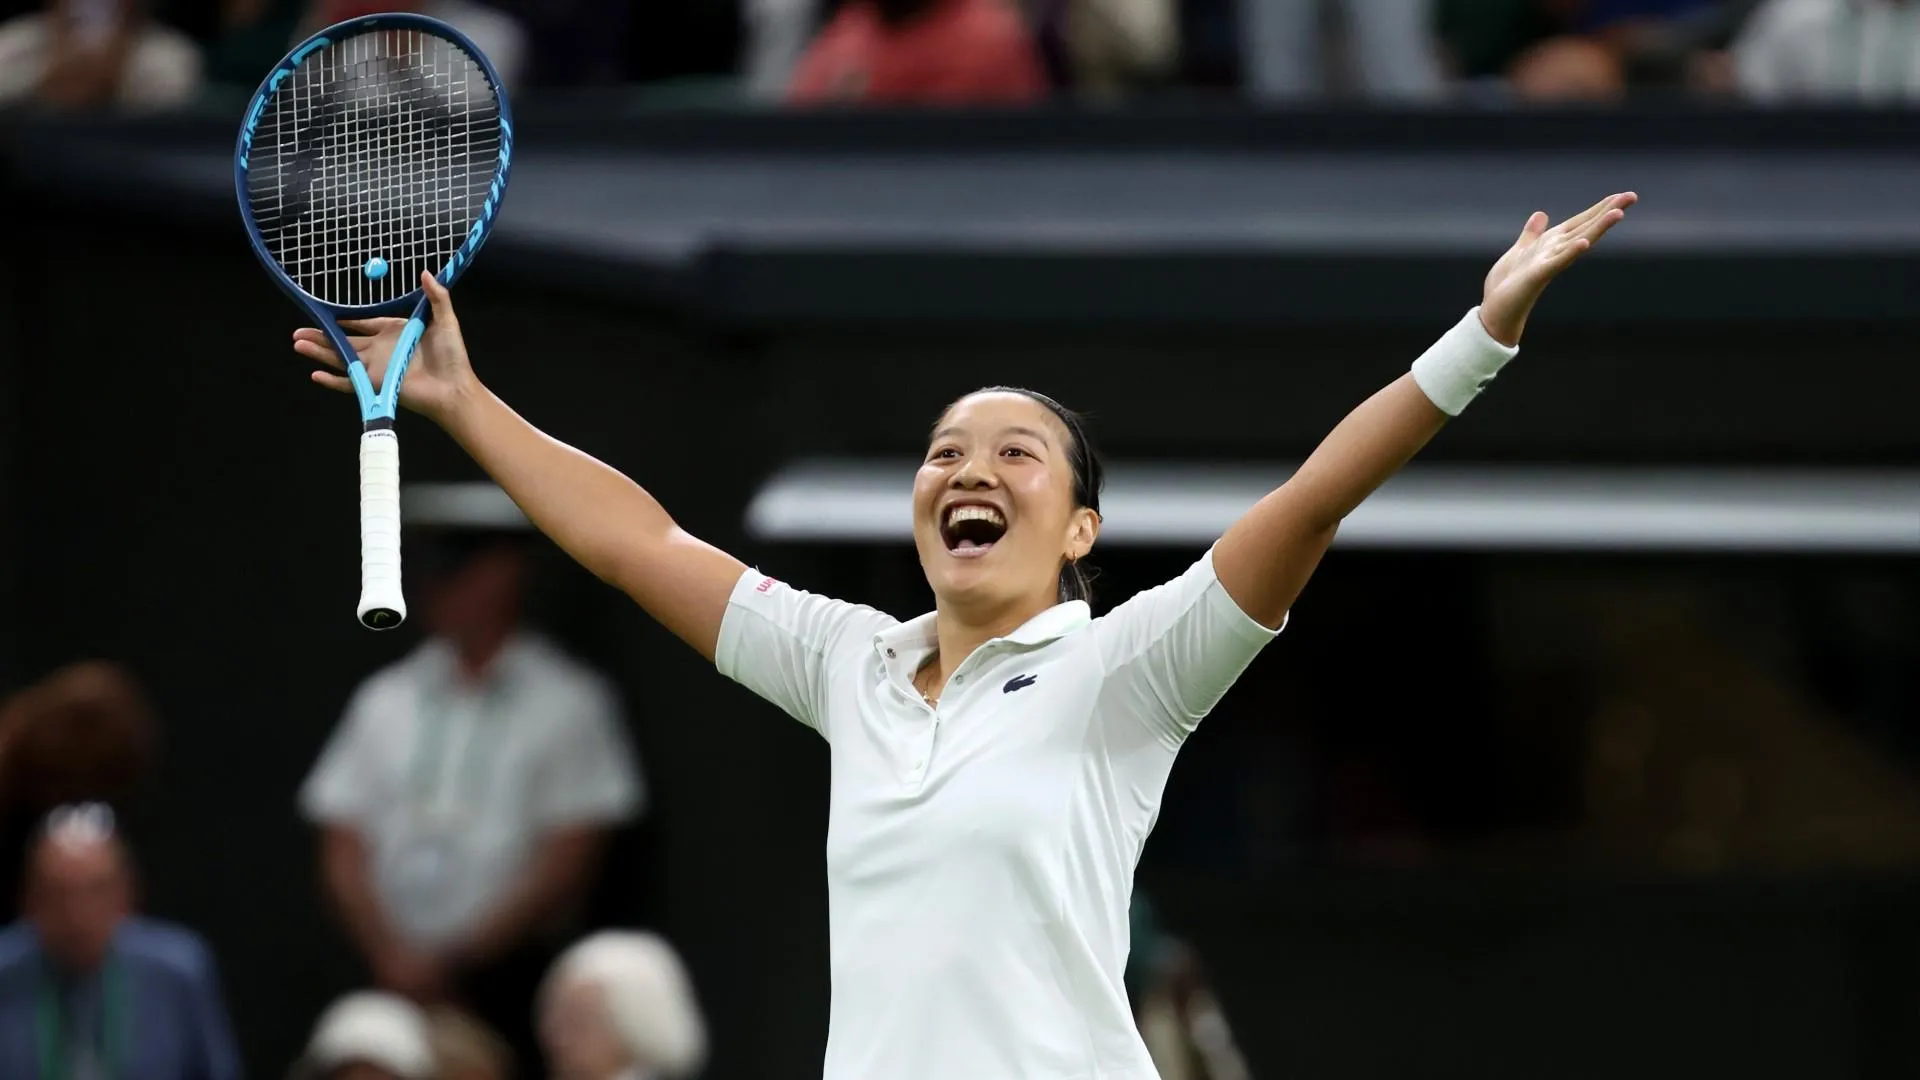 Djokovic thẳng tiến vòng 4 Wimbledon - Hoàng Nam xô đổ cột mốc lịch sử quần vợt Việt Nam